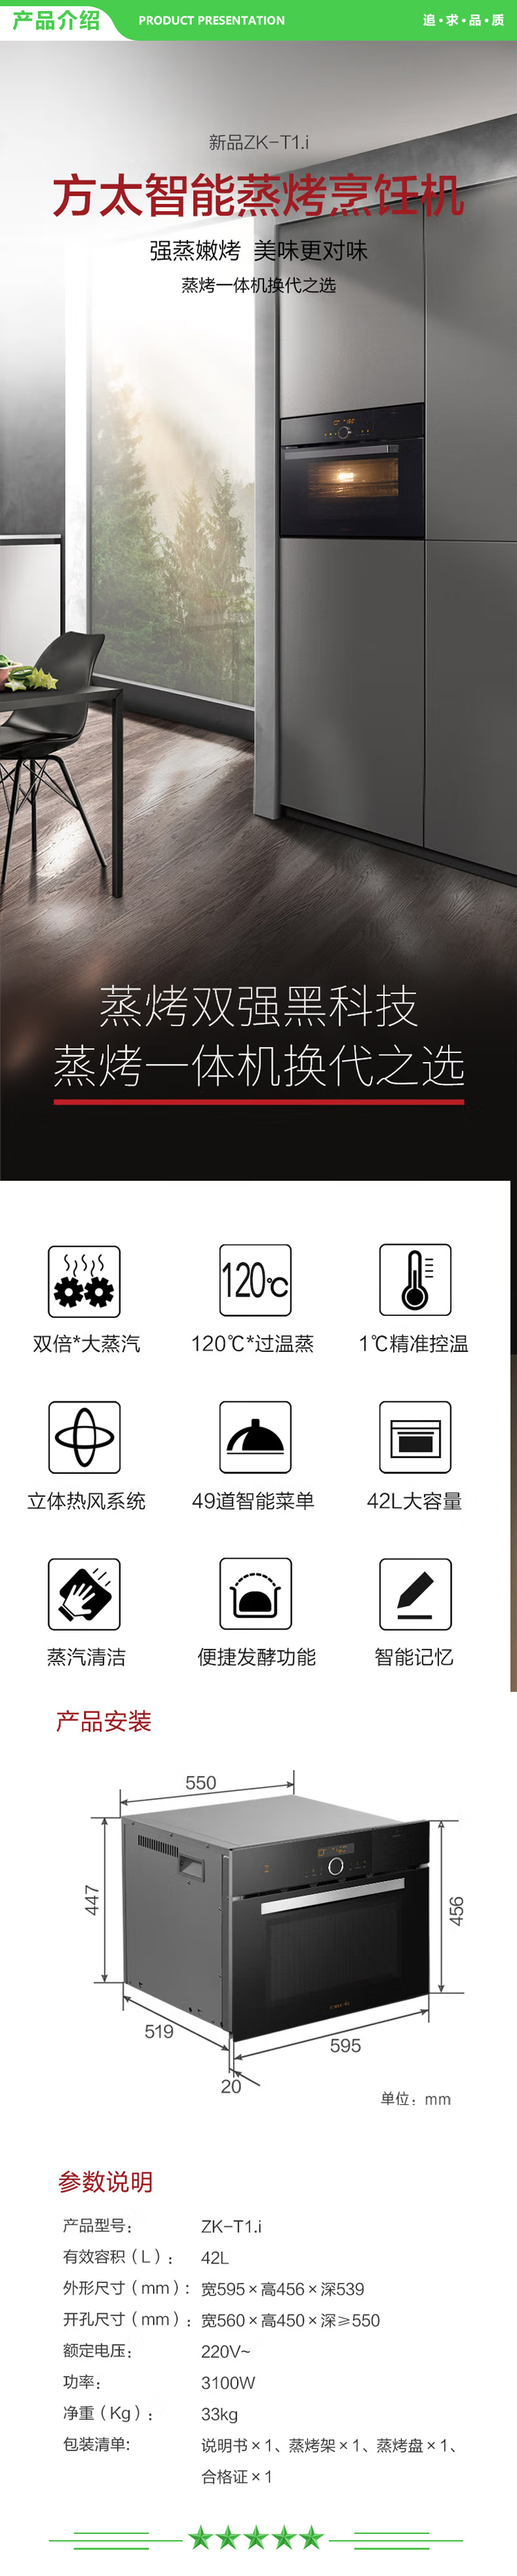 方太 FOTILE ZK-T1.i 智能蒸烤烹饪机 家用厨房嵌入式蒸烤箱一体机 大容量全新升级 智能NFC菜单.jpg